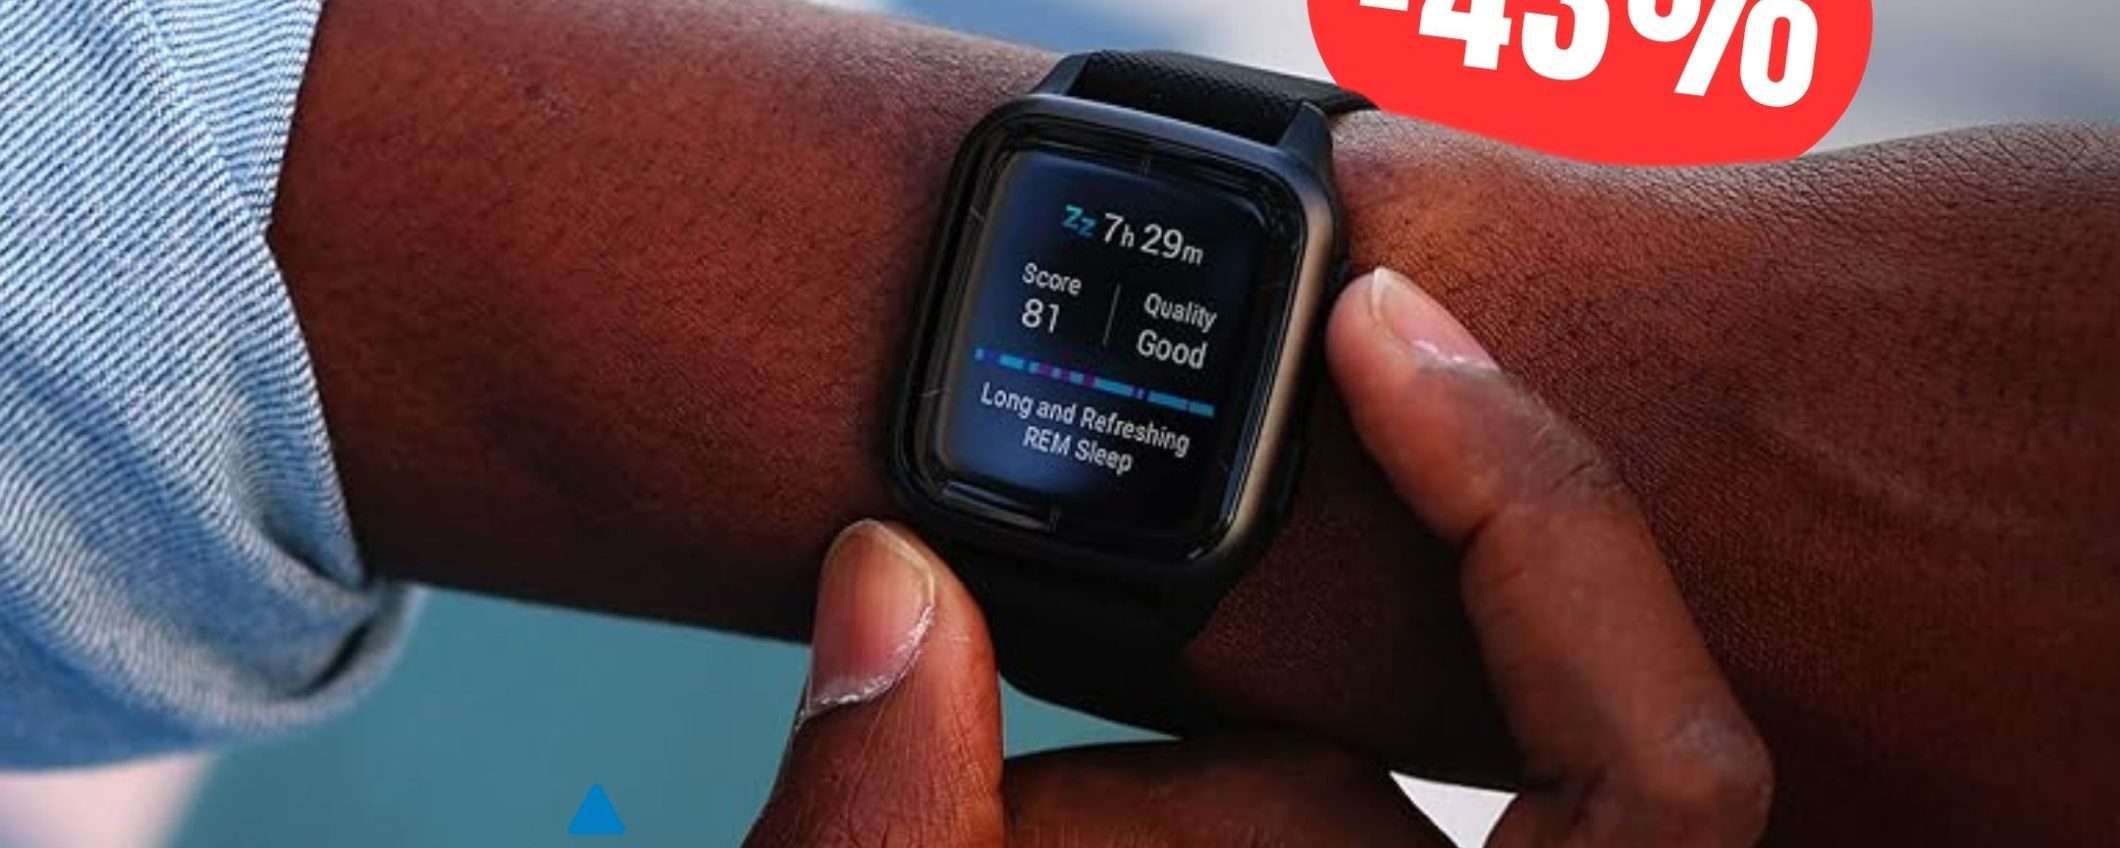 SCONTO FOLLE per questo Smartwatch Garmin pensato per gli sportivi!